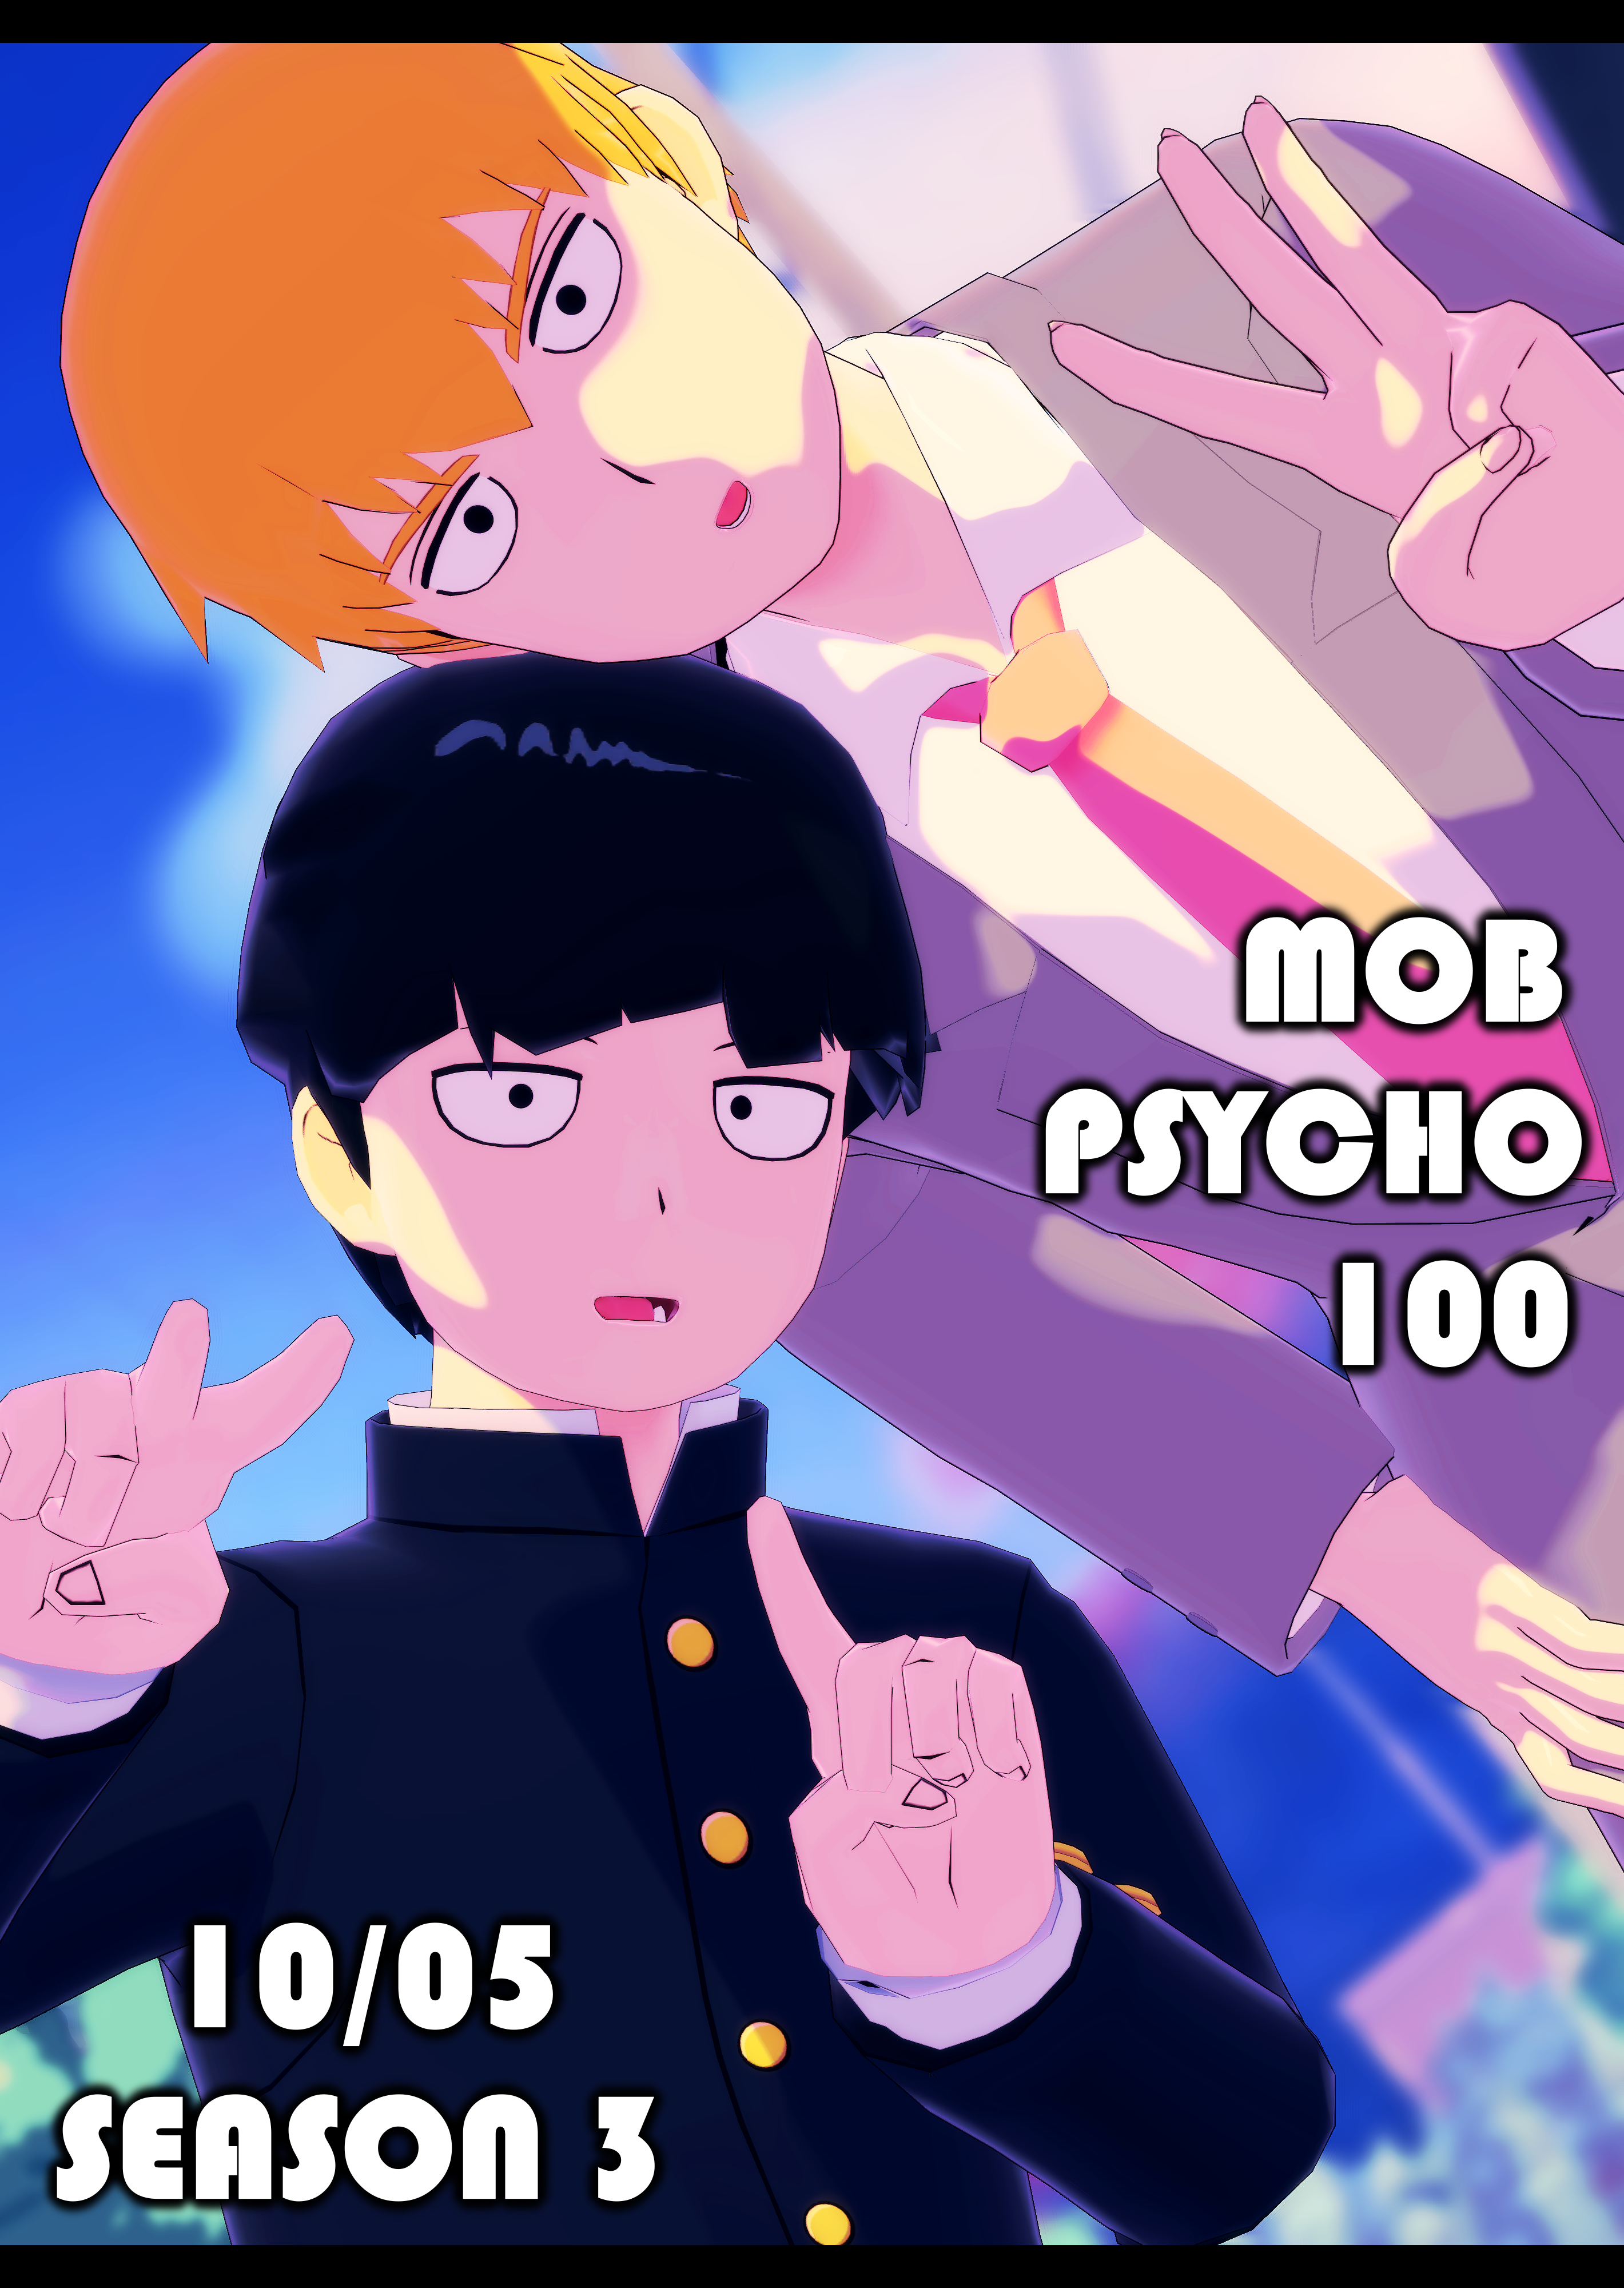 Reigen Mob Psycho 100 Season 3 Fanart by Cript1d on DeviantArt